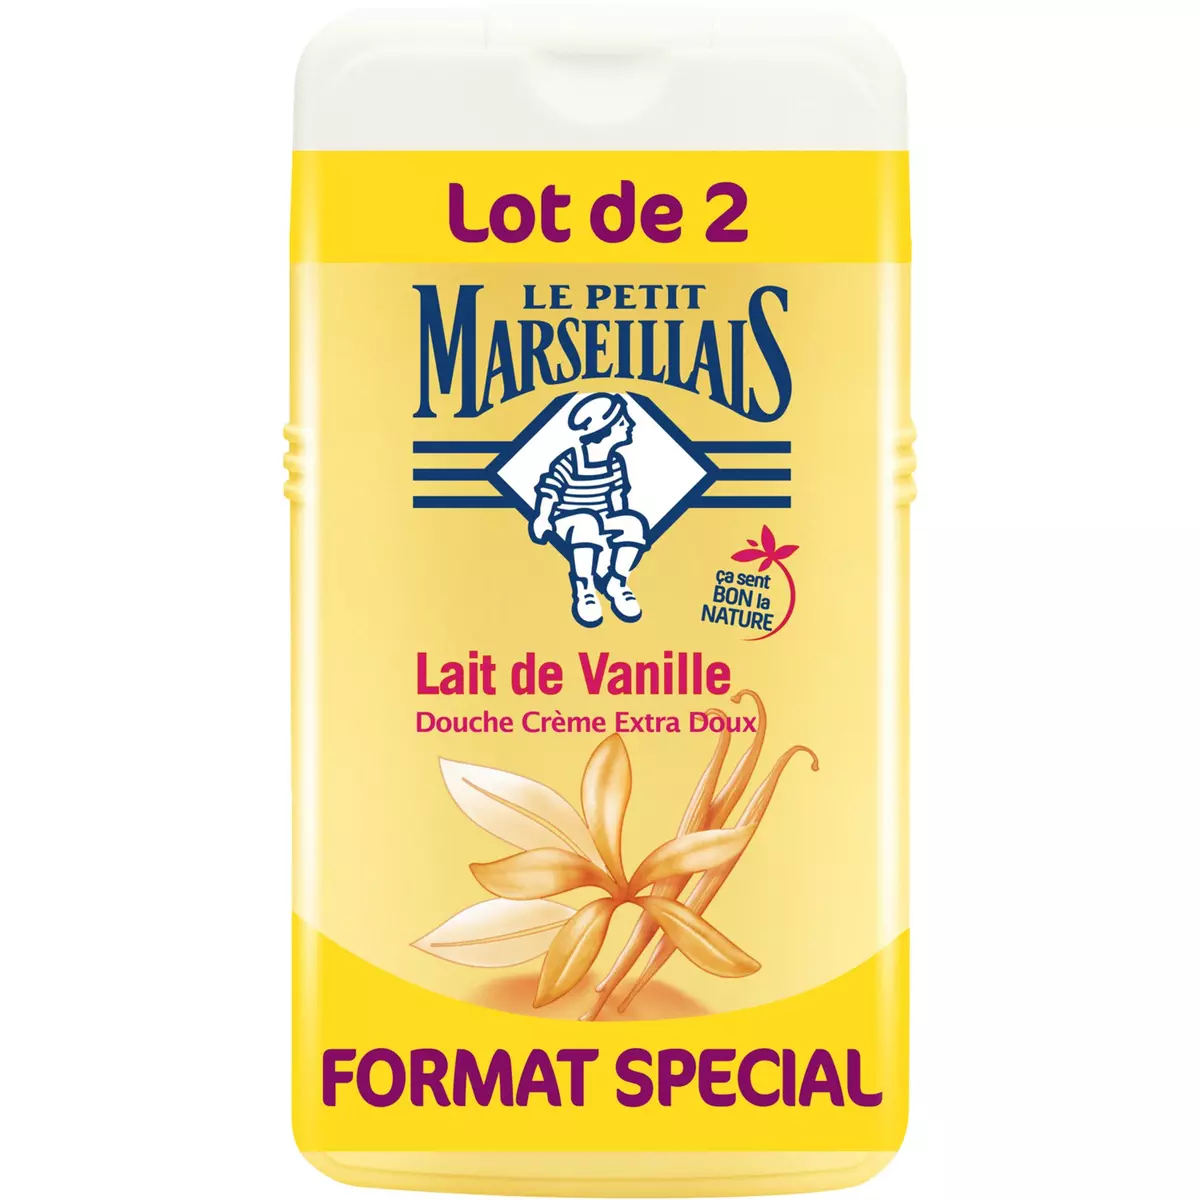 LE PETIT MARSEILLAIS Le Petit Marseillais Douche crème lait de vanille 2x250ml 2x250ml